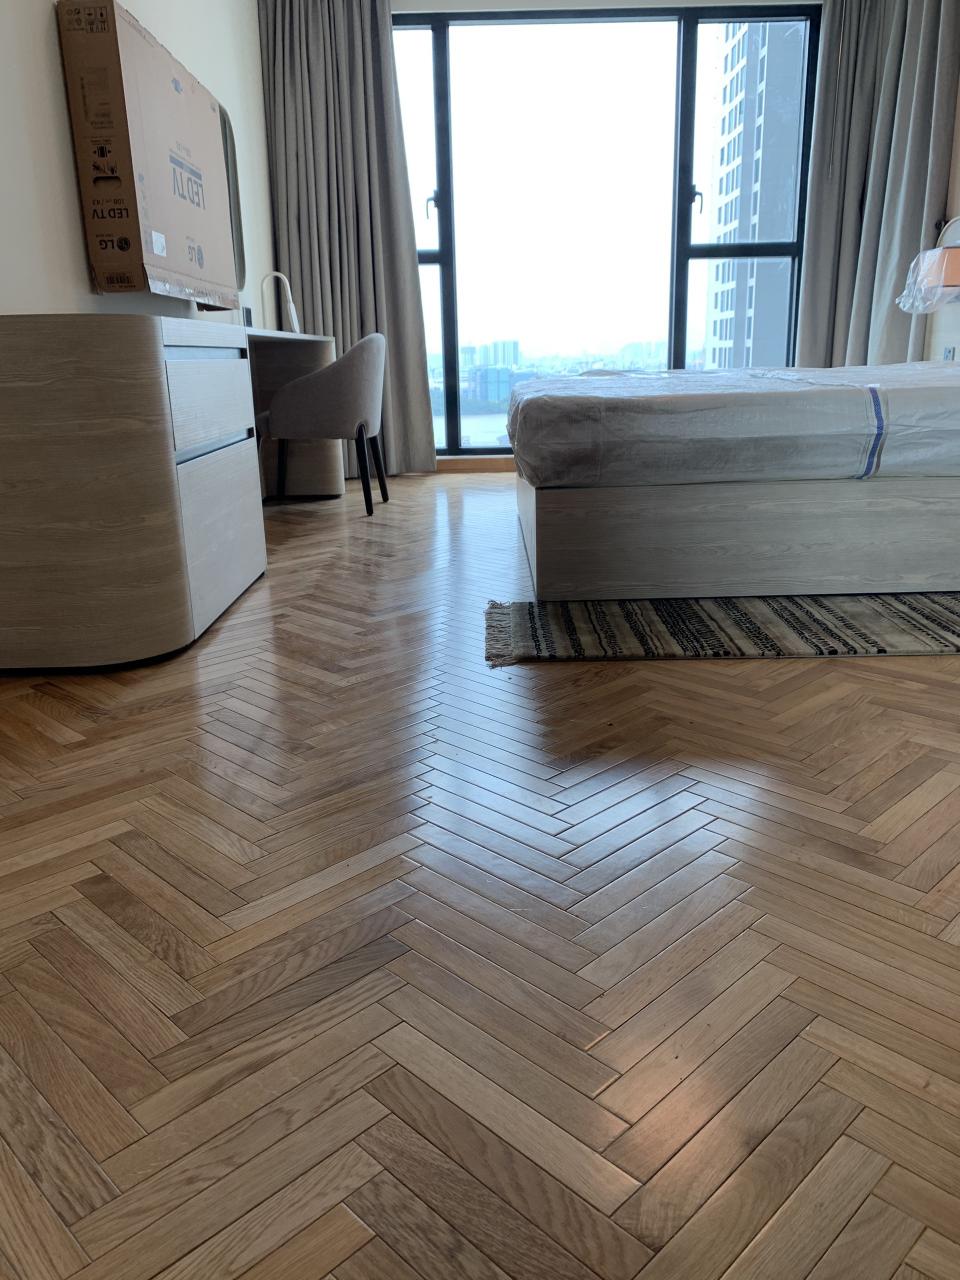 Sử dụng sàn gỗ thông phòng có tốt không?